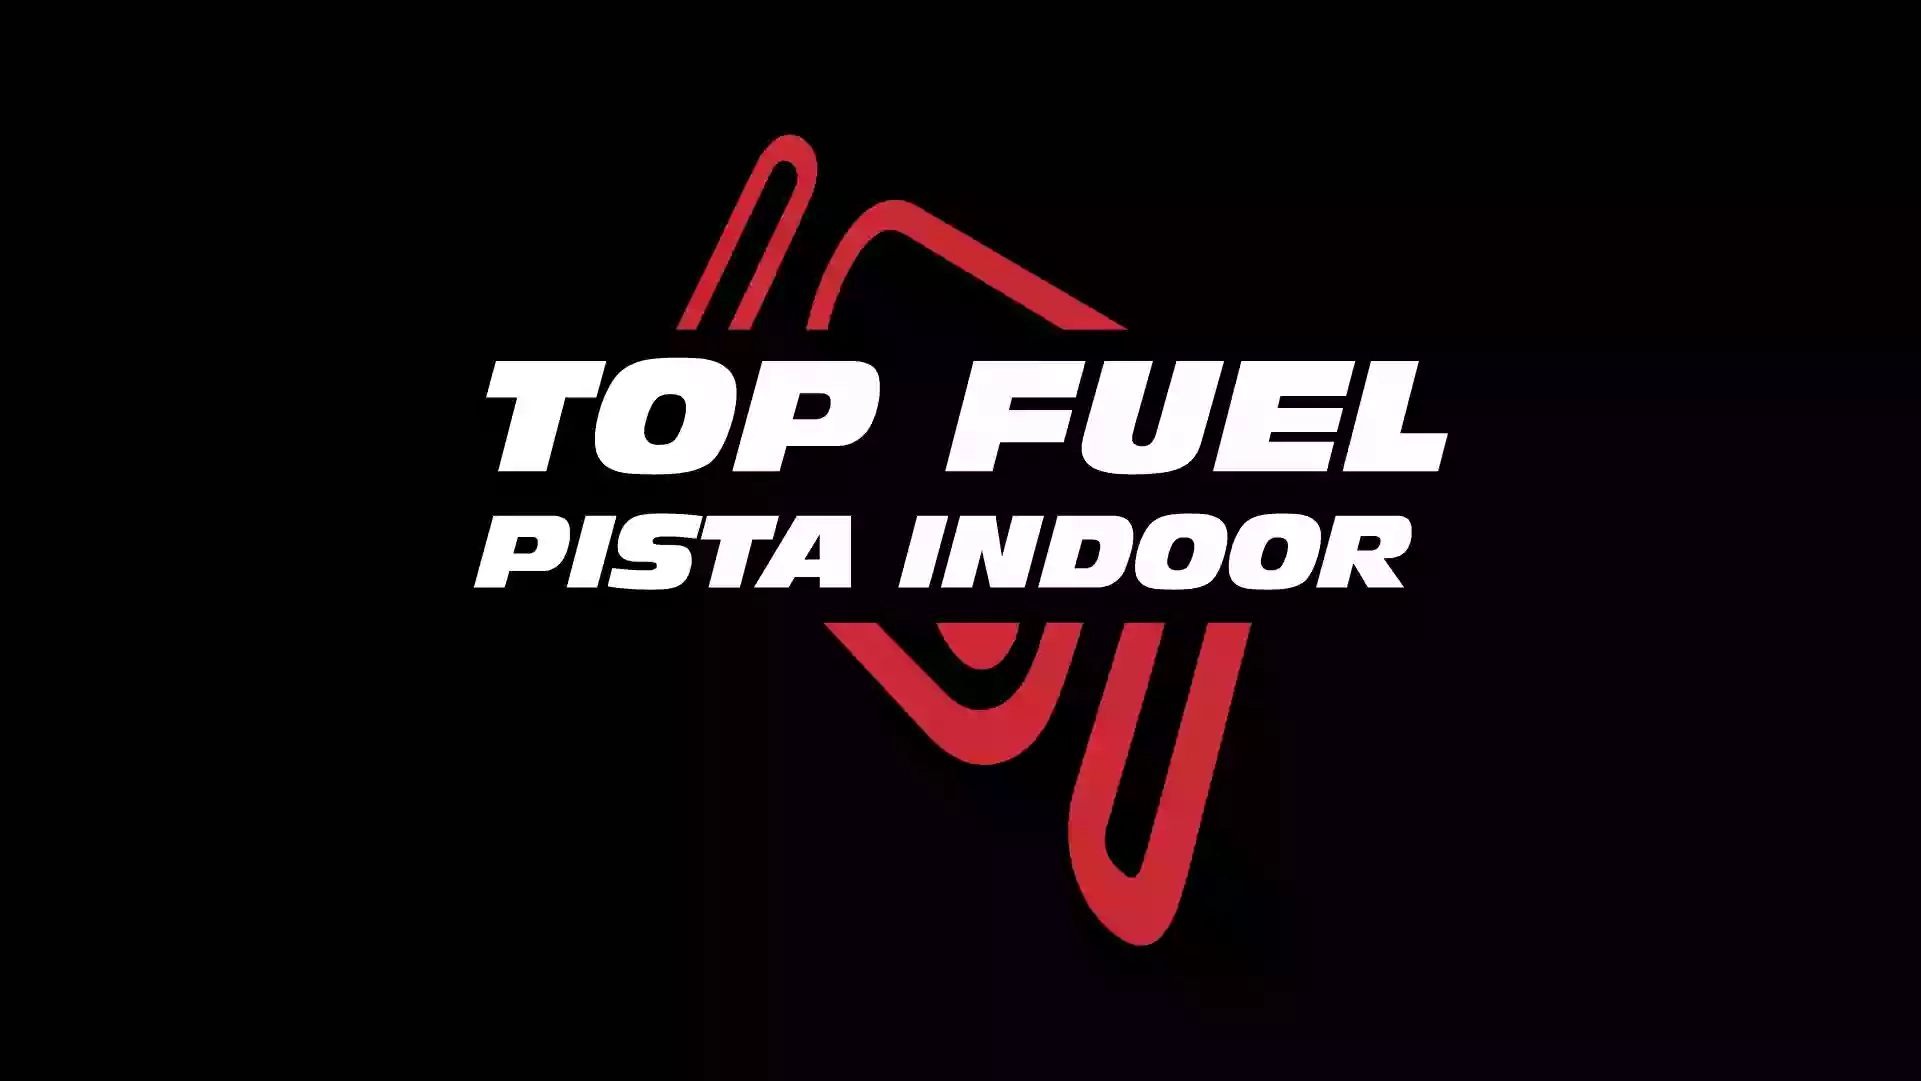 Topfuel Racing Arena di Milano